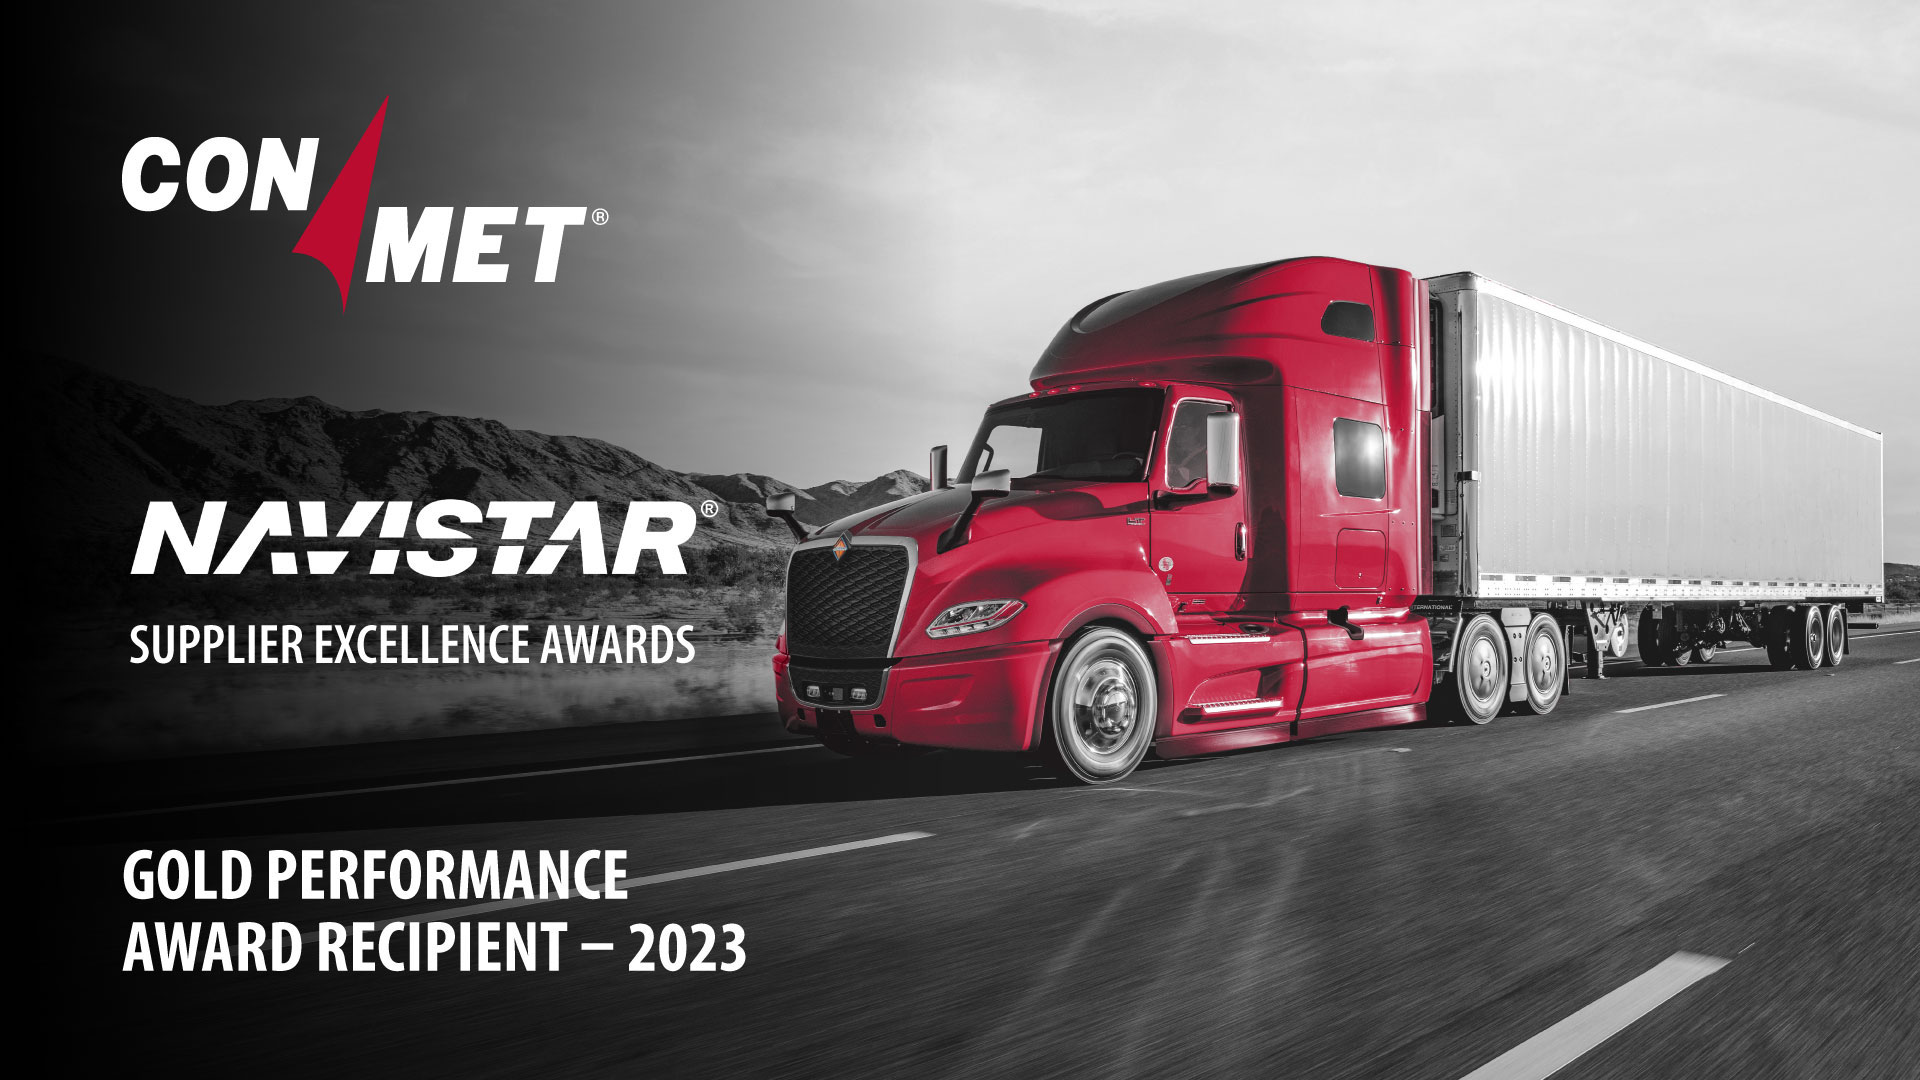 ConMet recibe el premio Supplier Excellence Award 2023 de Navistar